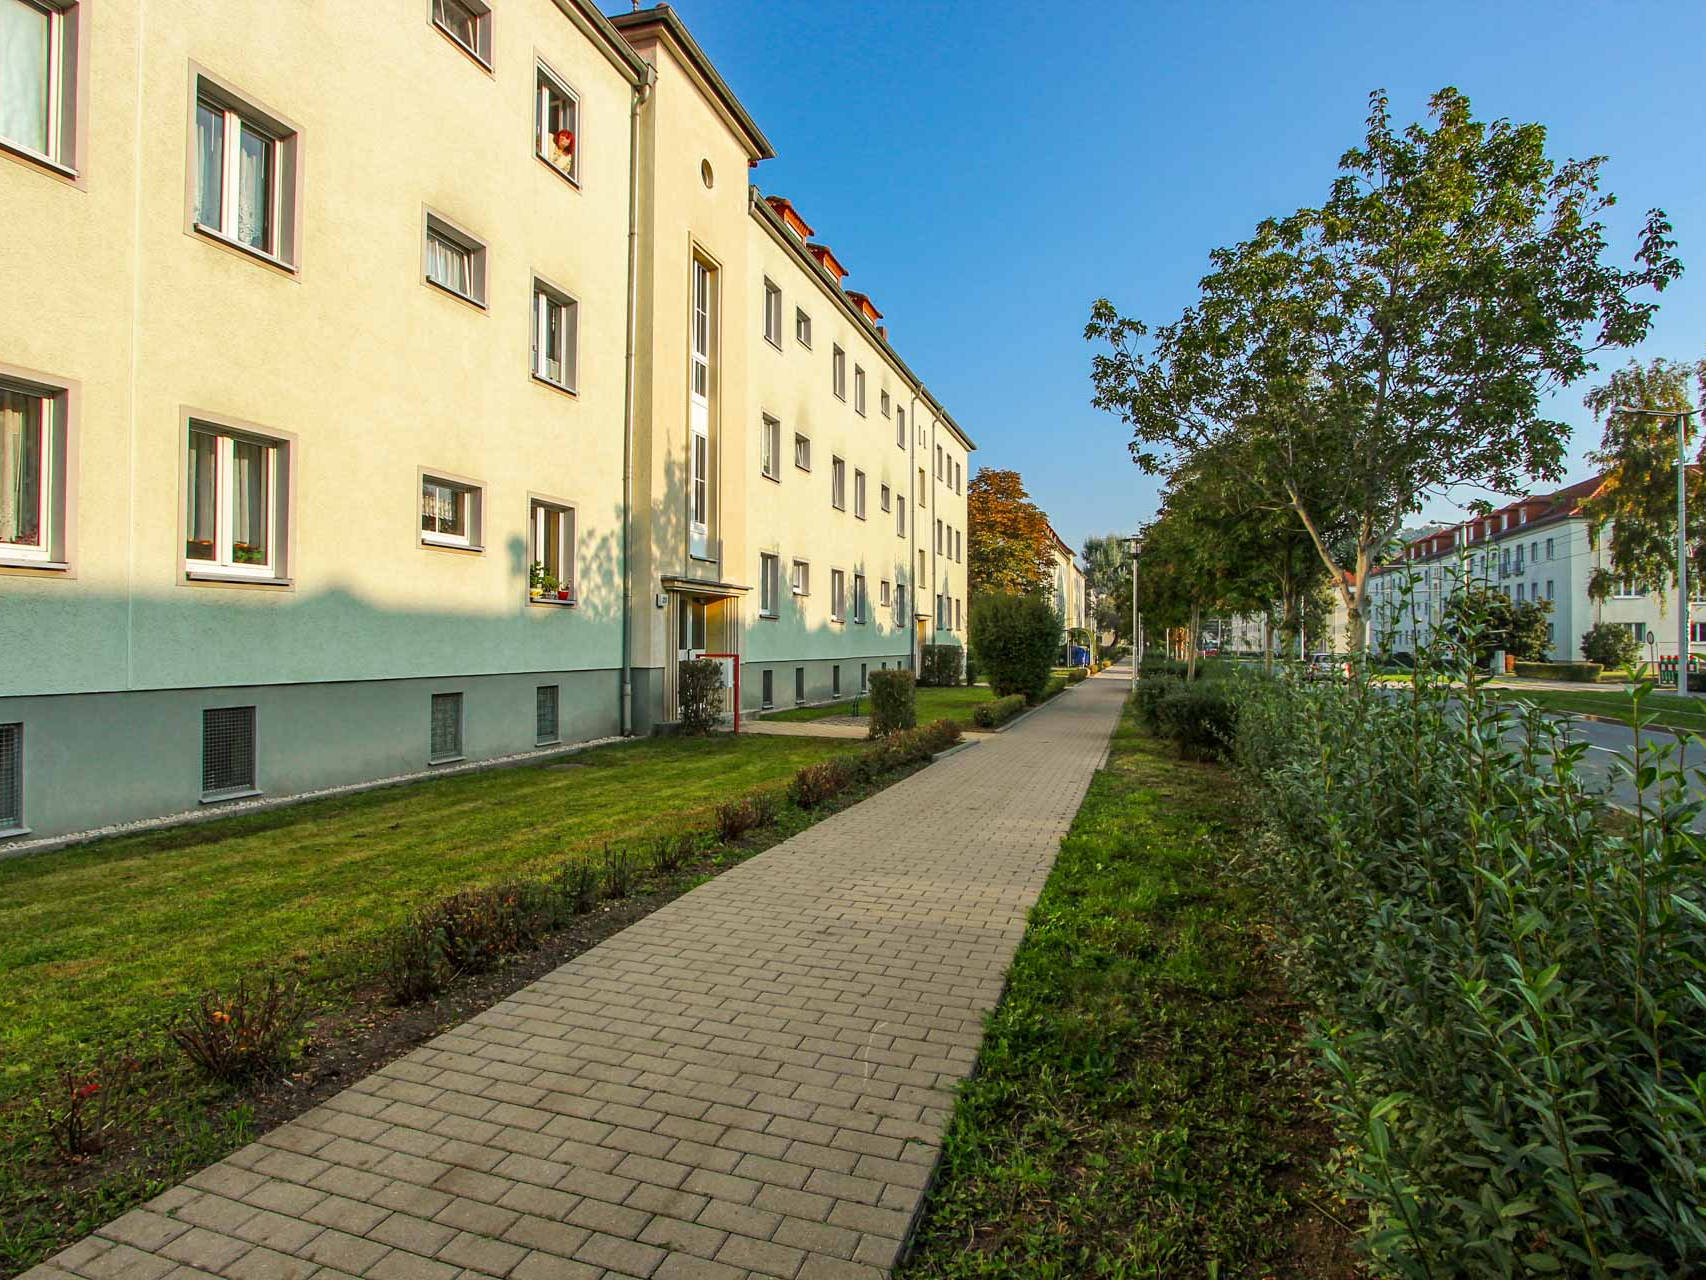 Gepflegte Vorgärten, viel Grün und ideale Anbindung ins Gearer Zentrum. So lebt es sich in der Straße der Völkerfreundschaft im Stadtteil Zwötzen.